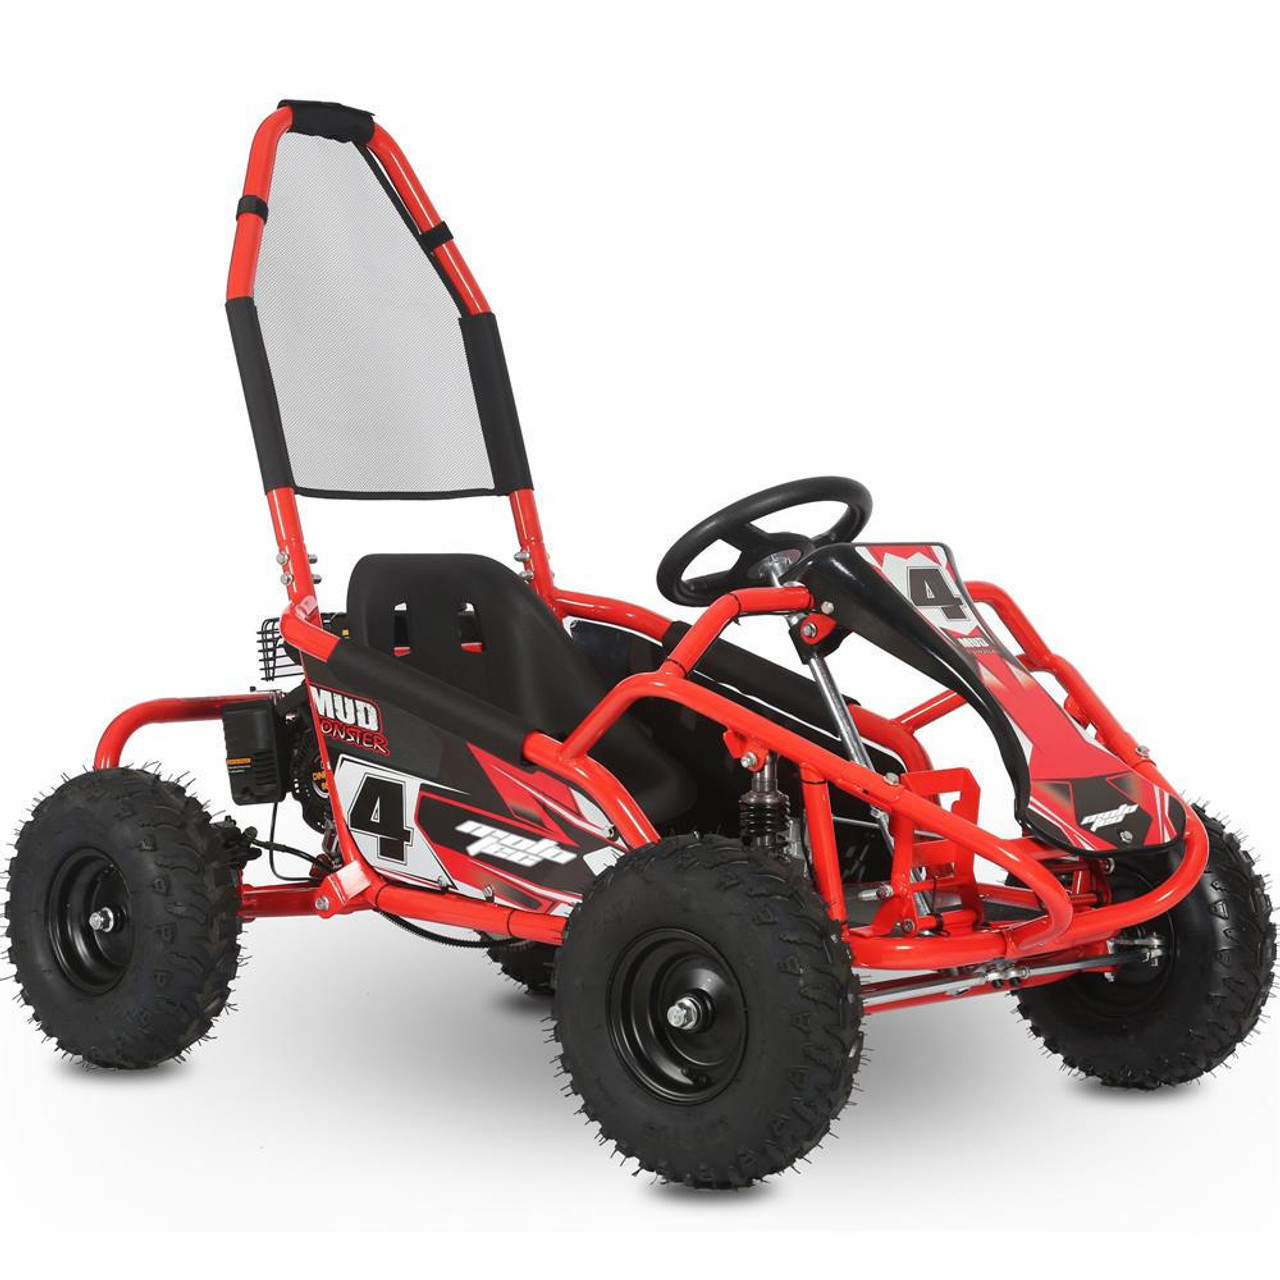  Mototec Mud Monster 98cc Go Kart Full Suspension Red 